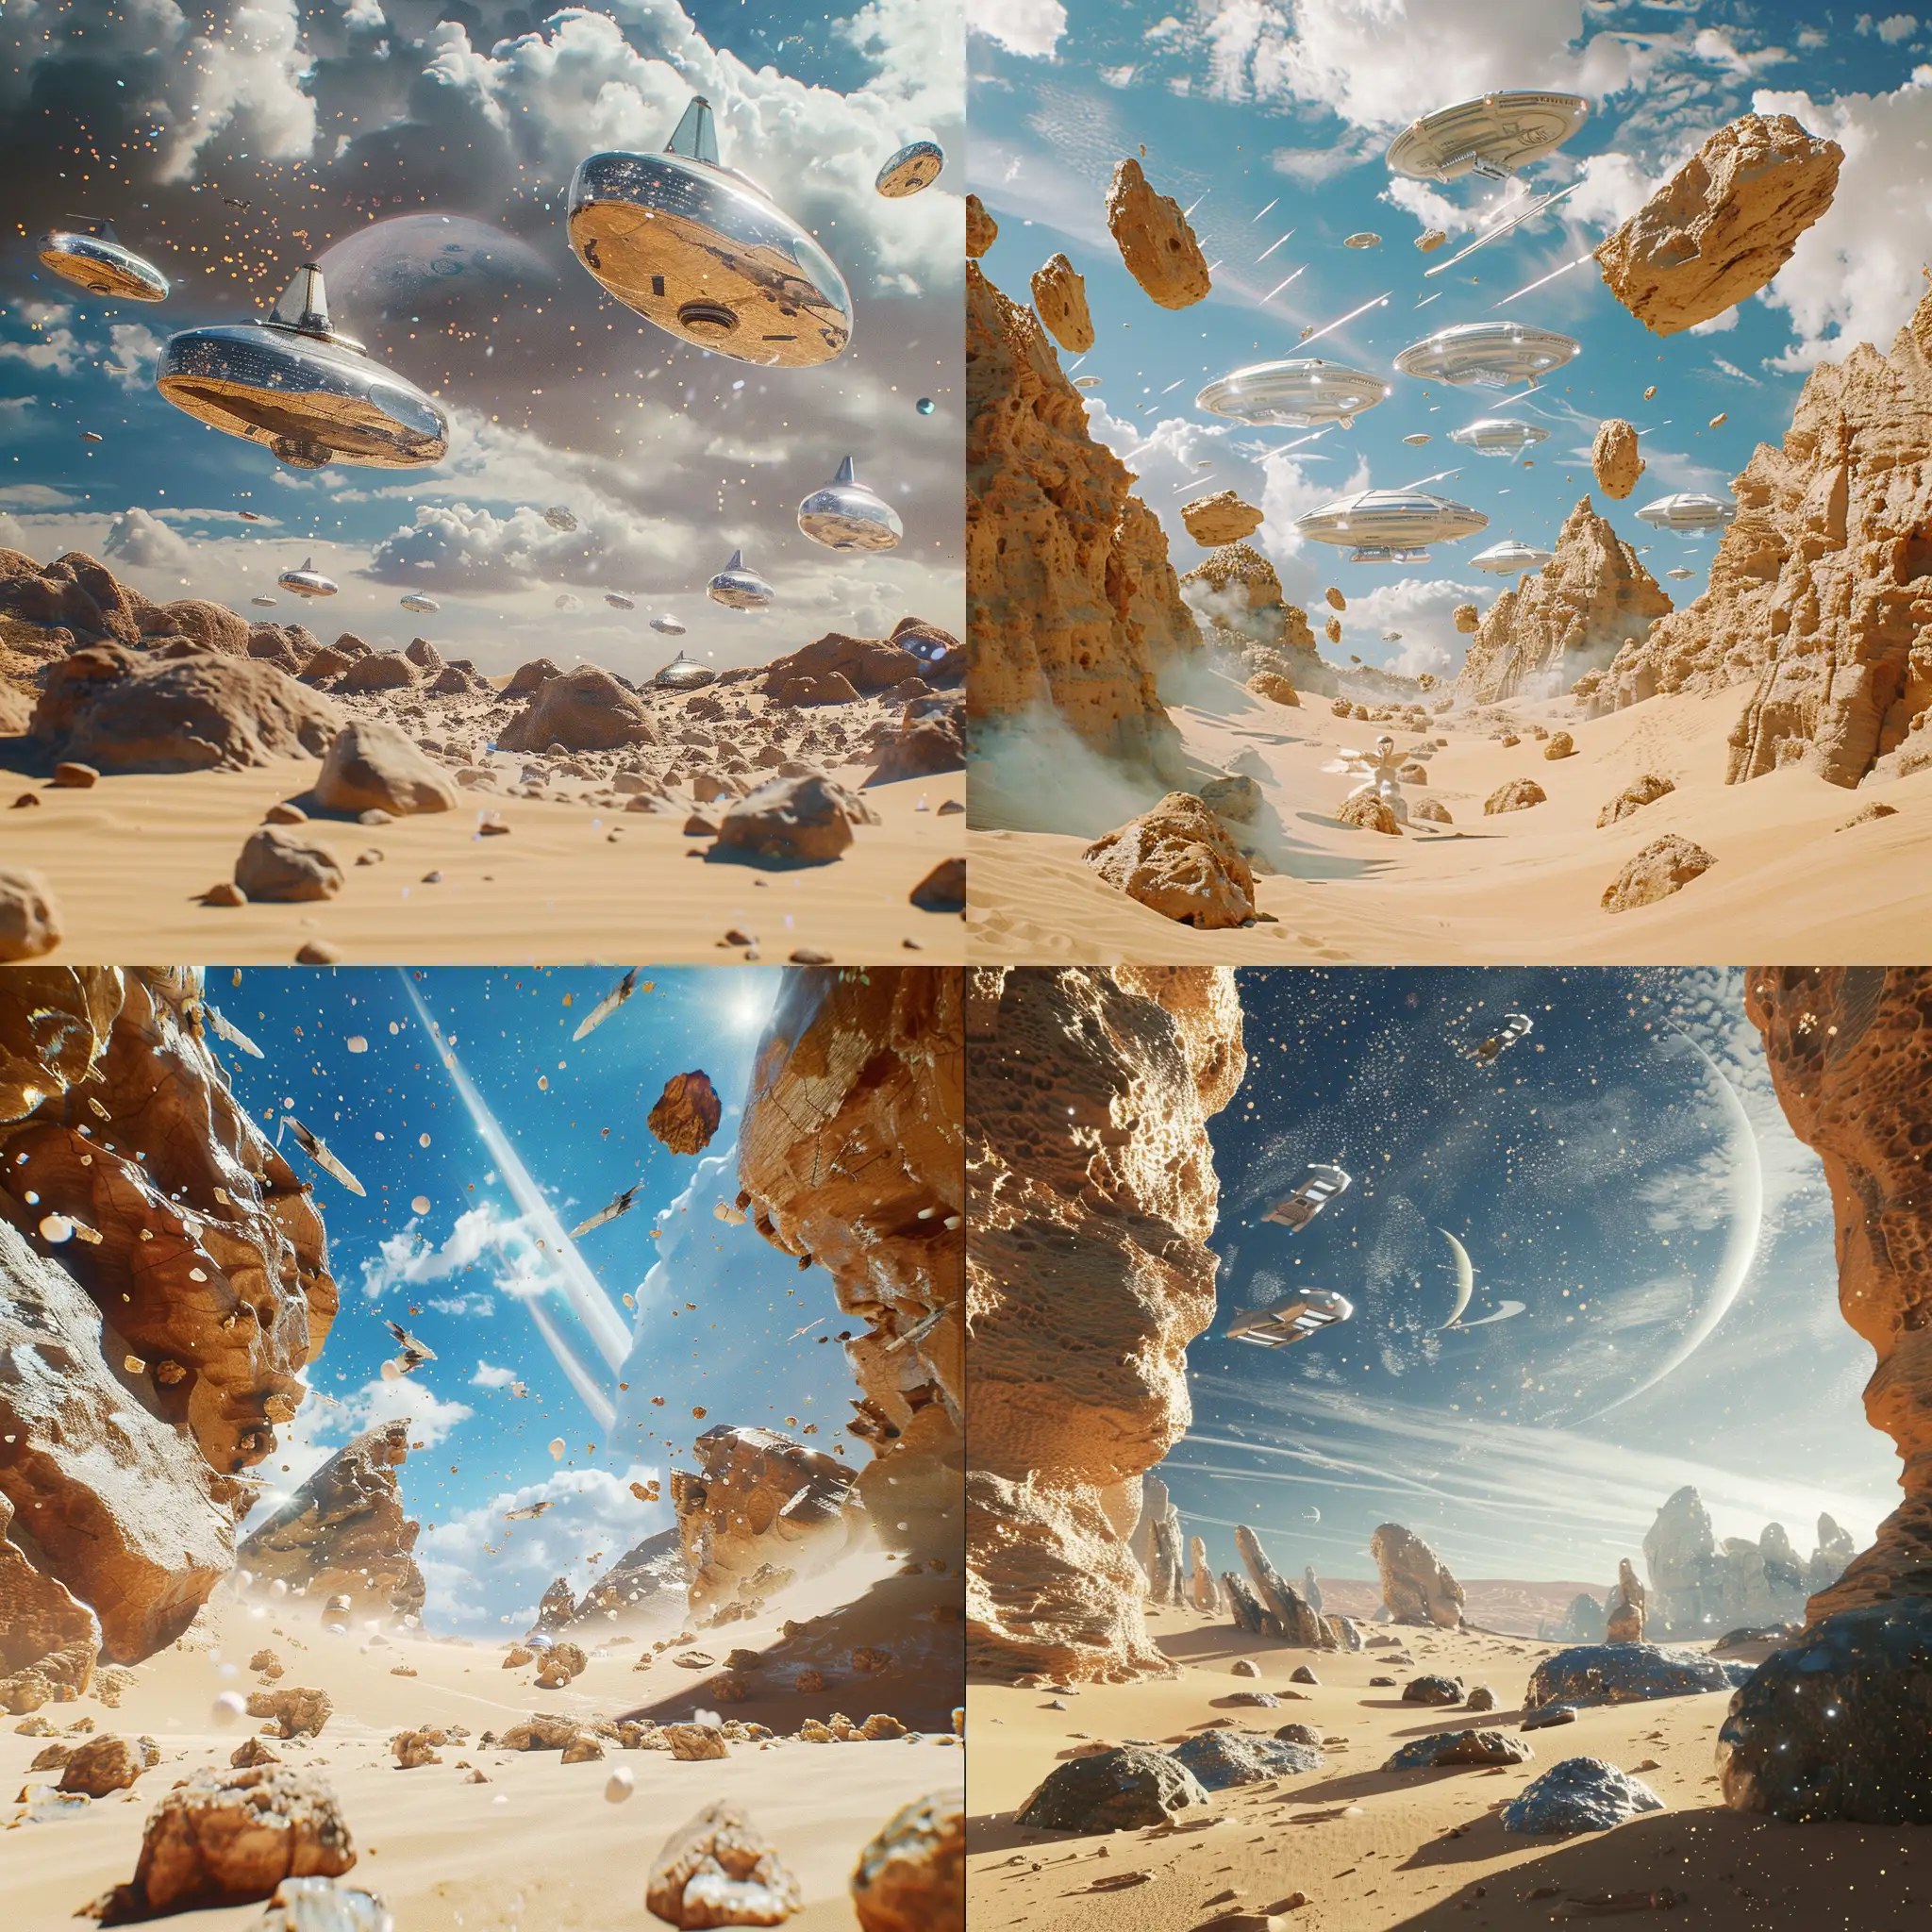  Фантастическая планета в стилистике фильма Дюна, космический пейзаж, песок, скалы, на небе космические корабли, 8k, плёночная фотография, ультодетализация, рассеяние света, резкий фокус, высокая детализация 